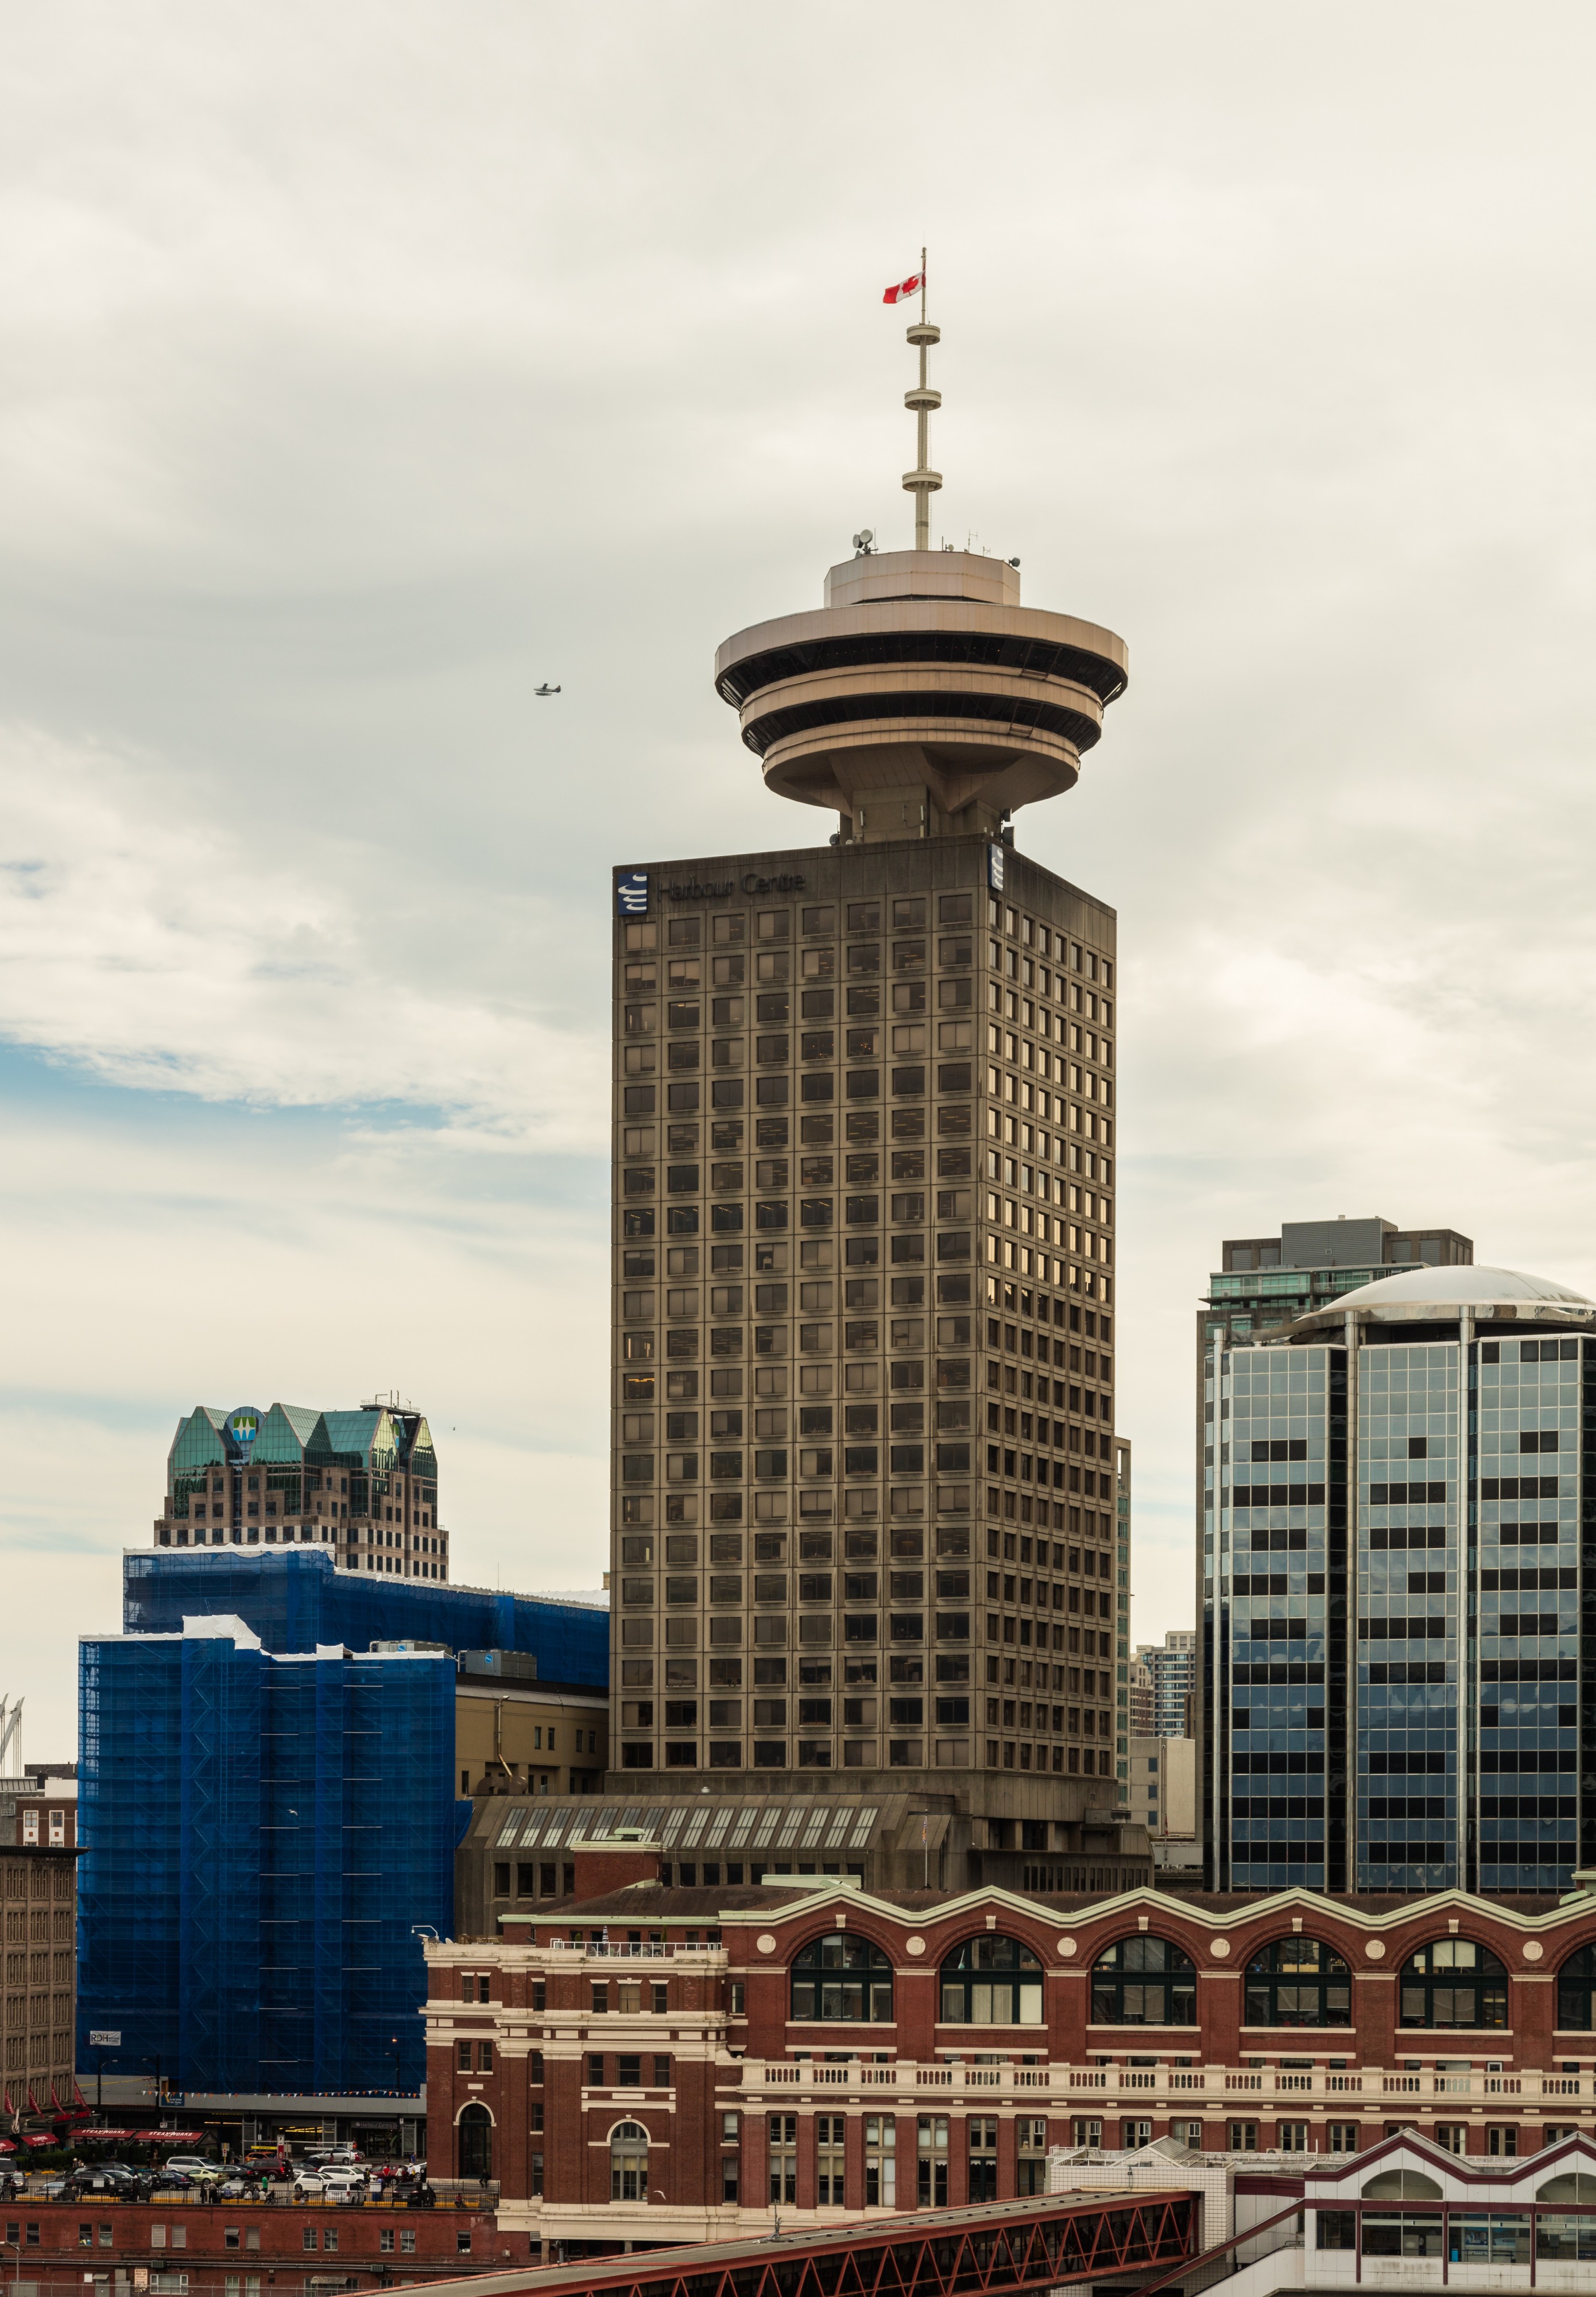 Harbour Centre, Vancouver, Canadá, 2017-08-14, DD 30